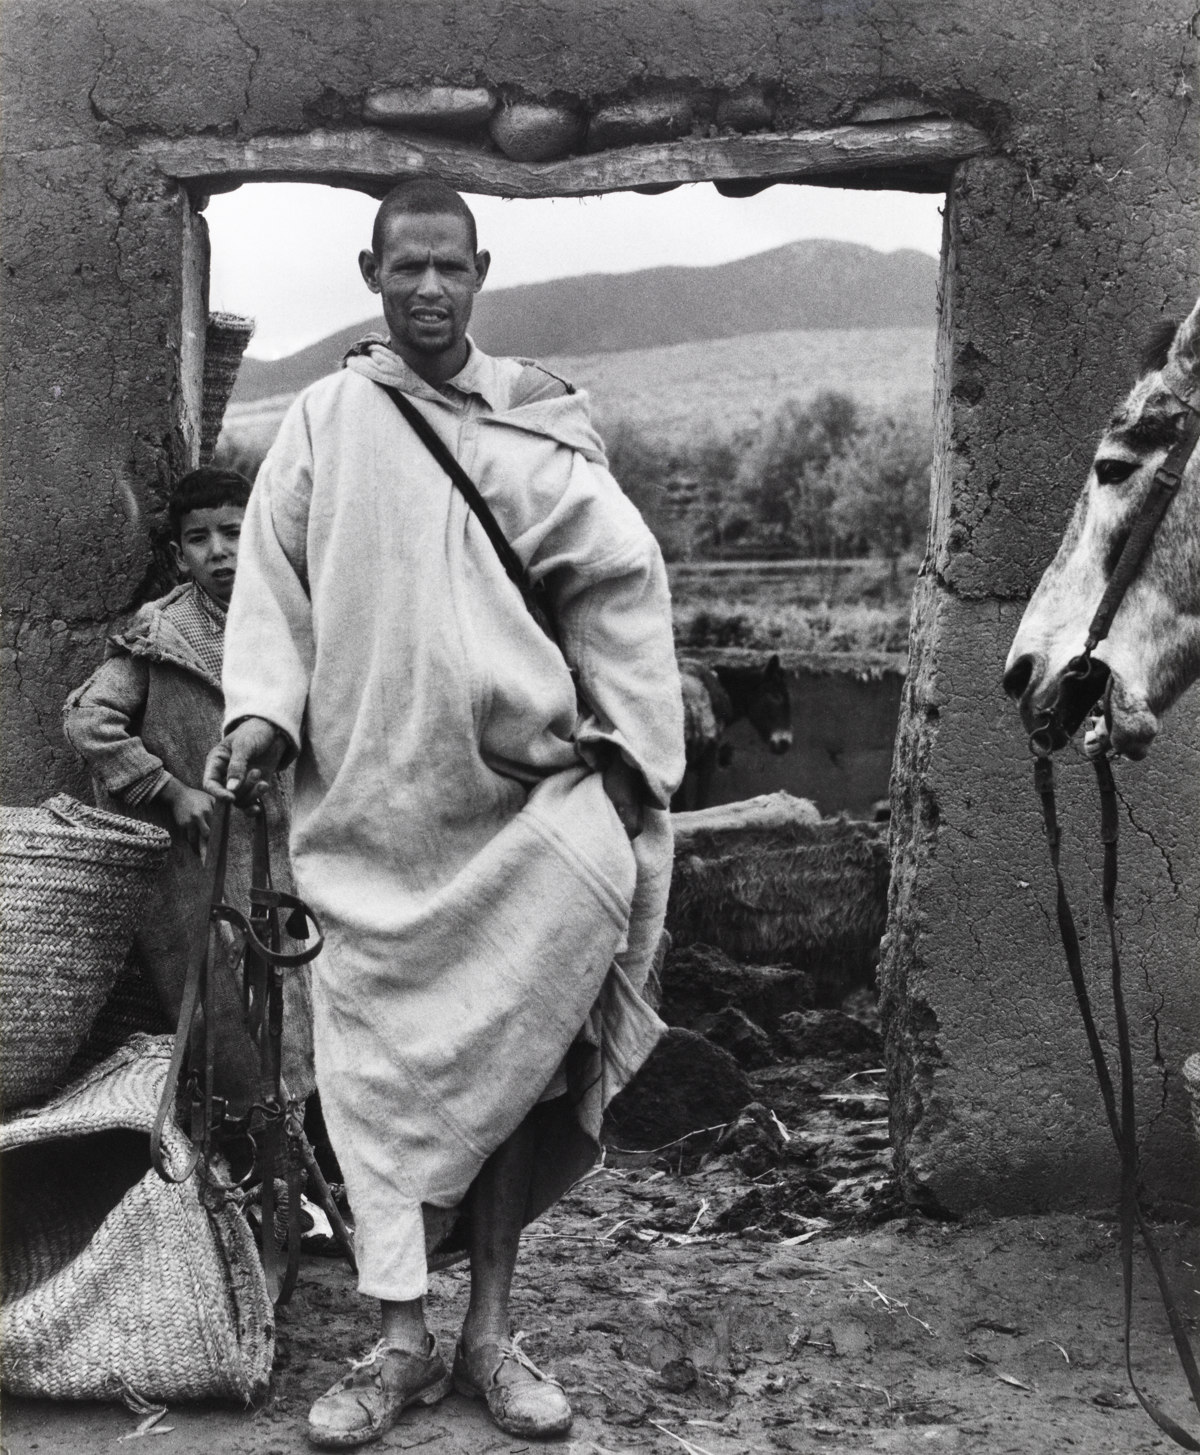 Man in Doorway, Ourika, Morocco [Hombre ante una puerta, Ourika, Marruecos] © Aperture Foundation, Inc., Paul Strand Archive © COLECCIONES Fundación MAPFRE